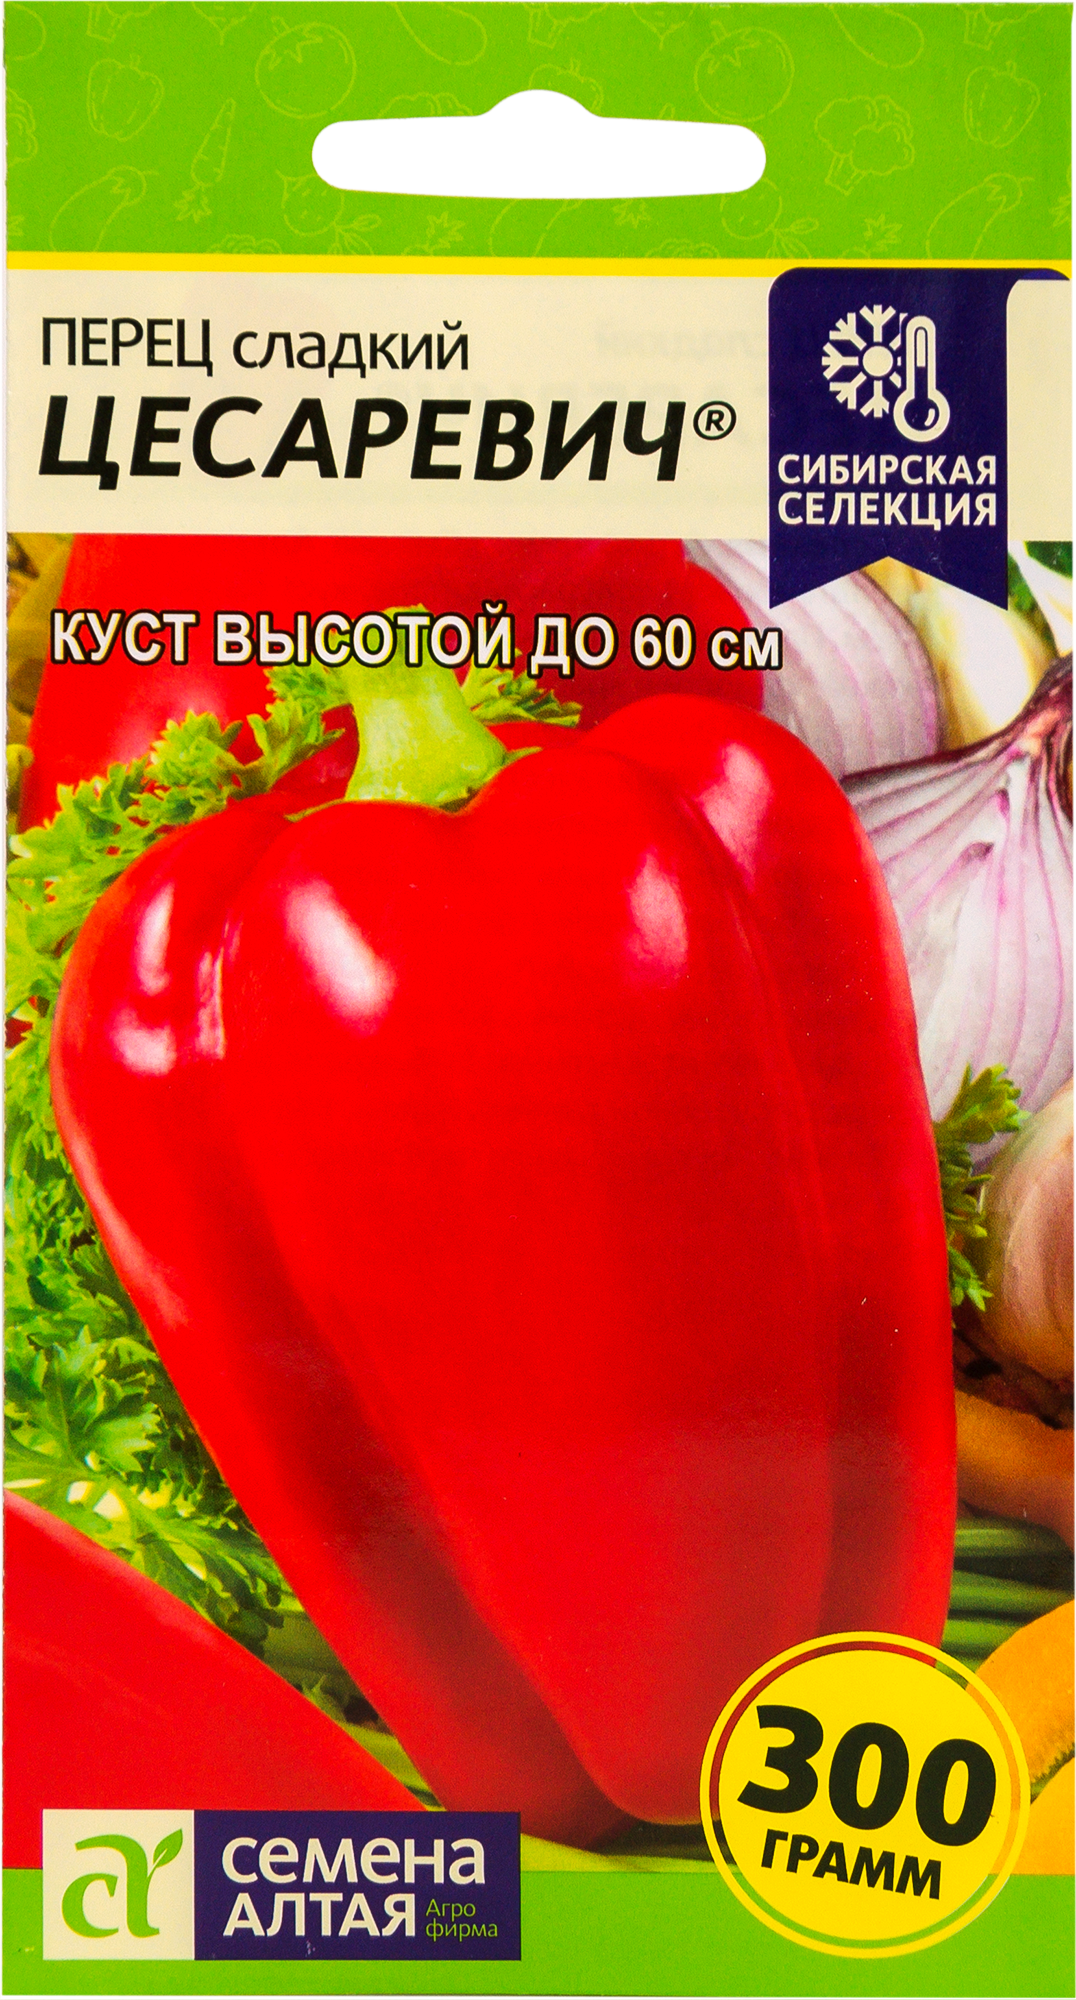 Семена Перец Наша селекция «Цесаревич», 0.1 г в Новосибирске – купить понизкой цене в интернет-магазине Леруа Мерлен